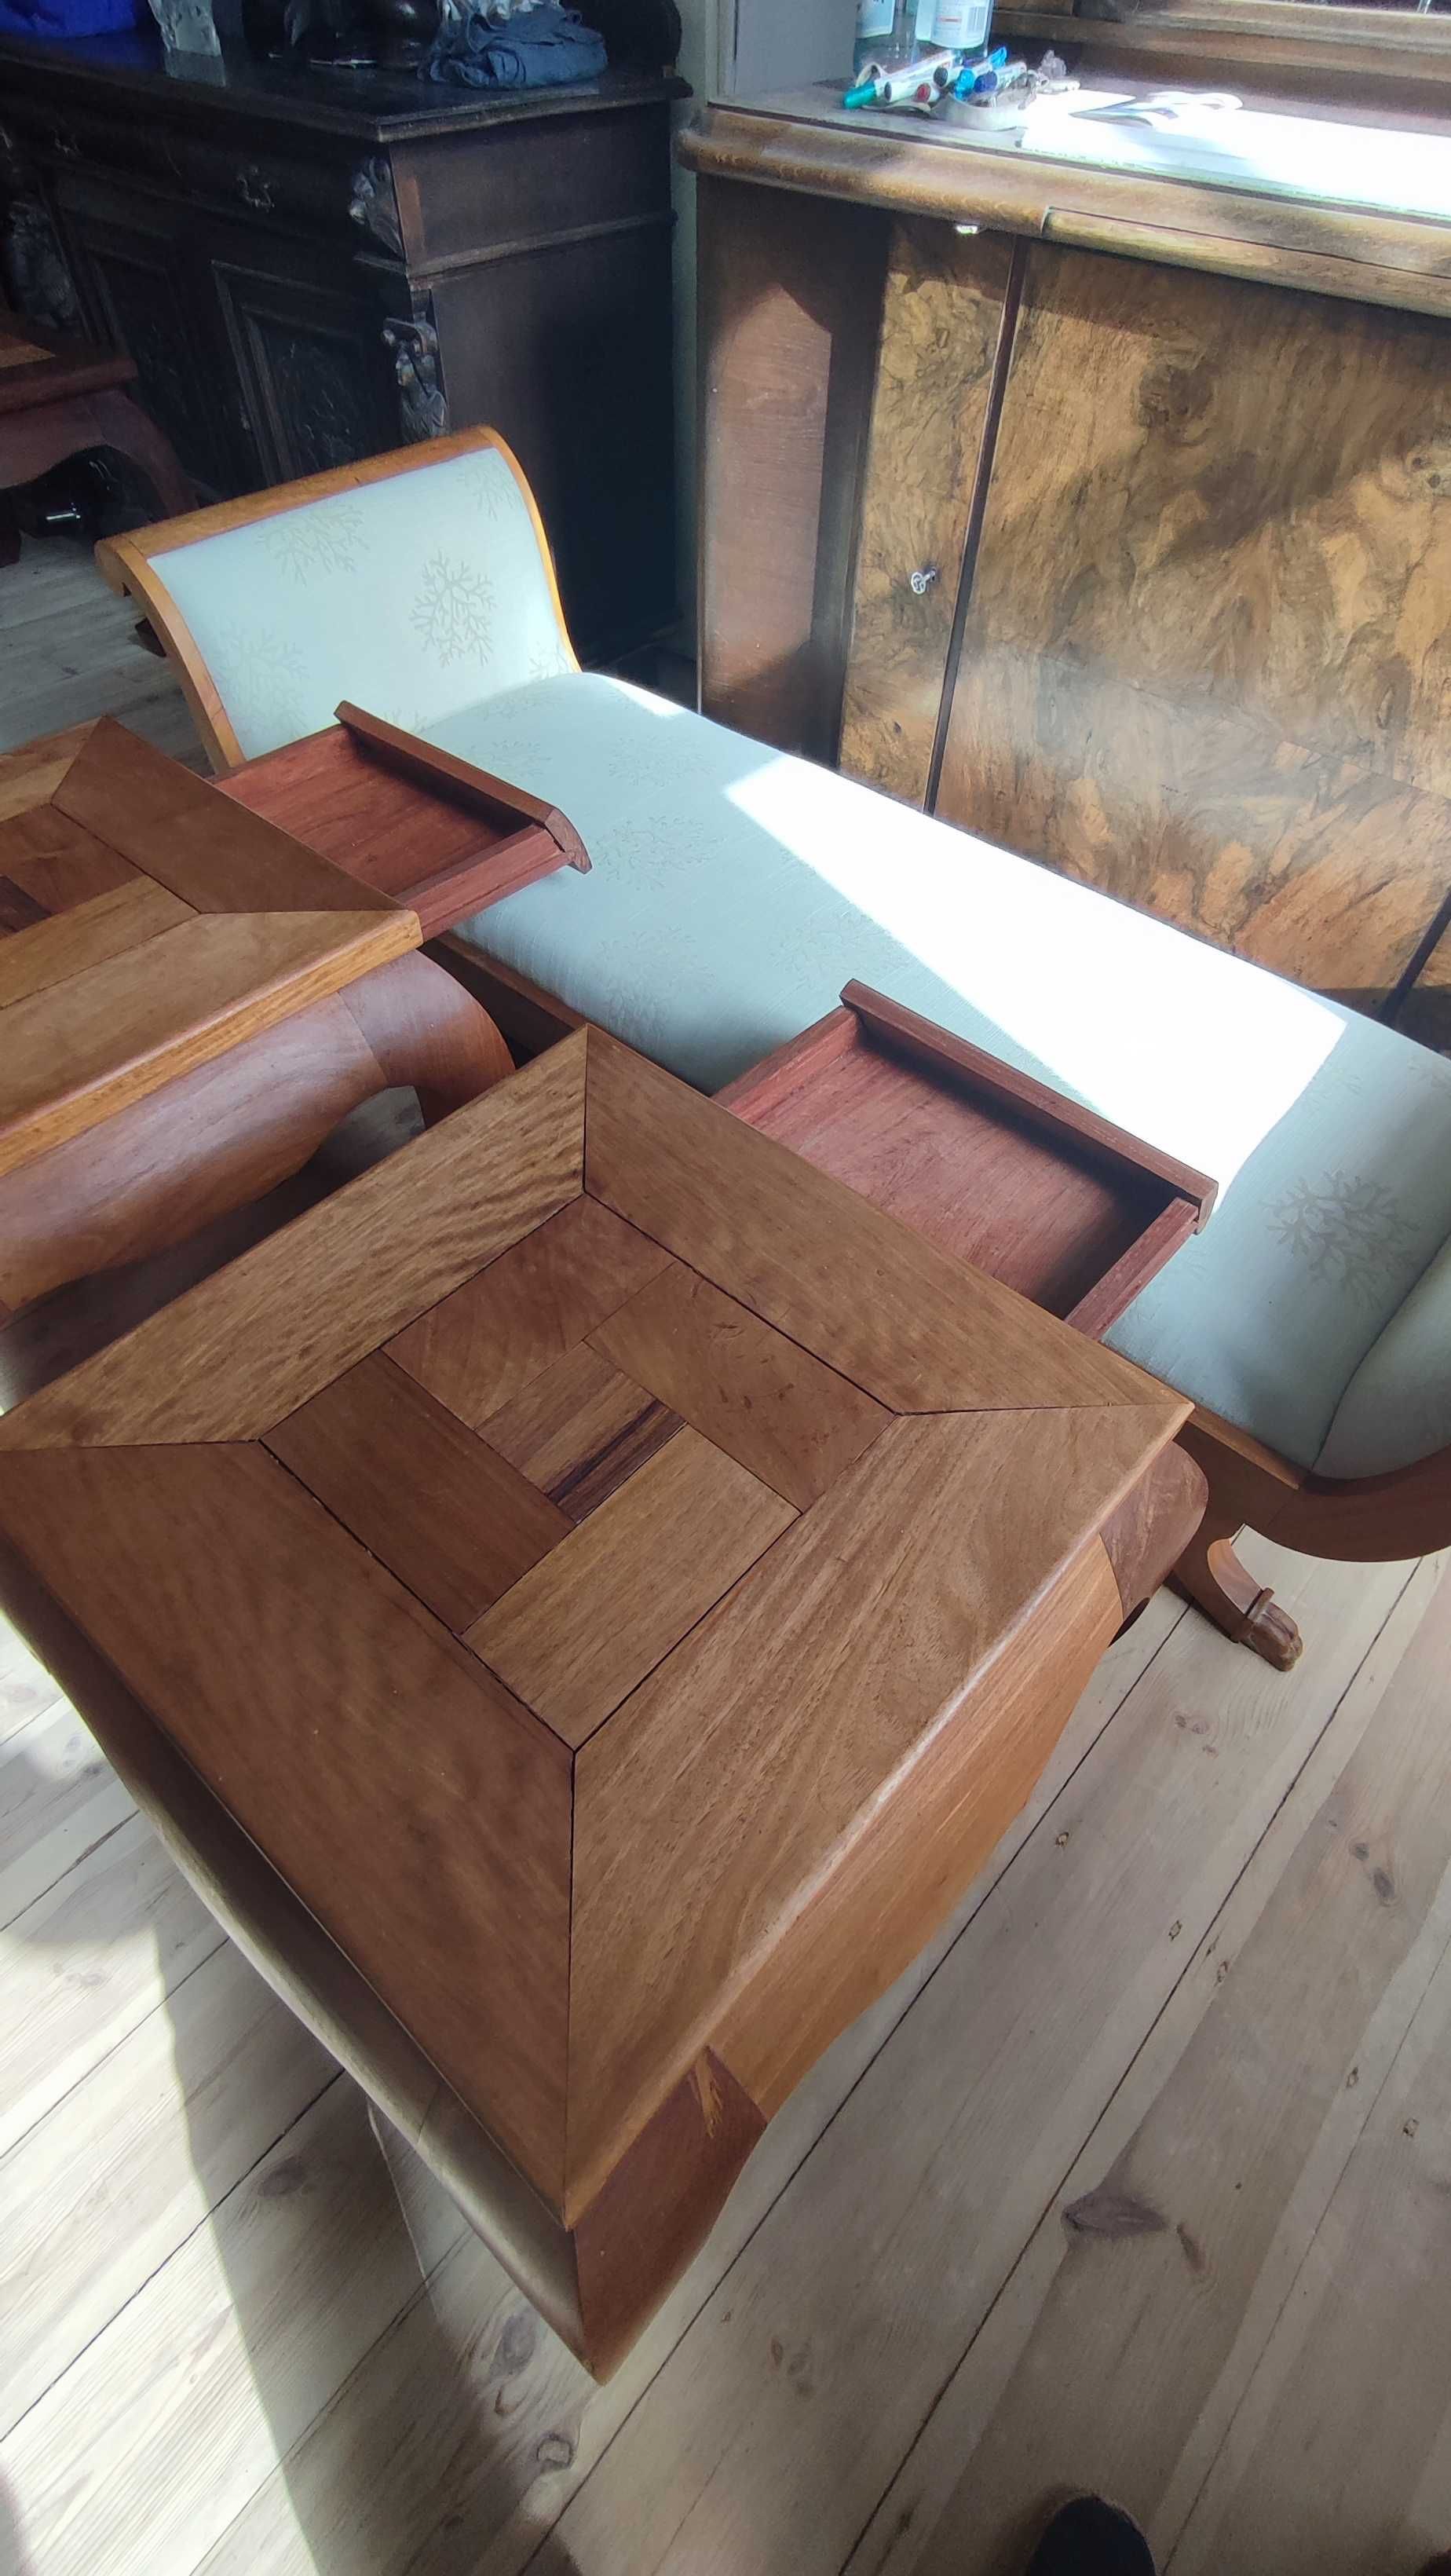 Zestaw 2 stylowych stolików kawowych - wymiary: 70x70x55